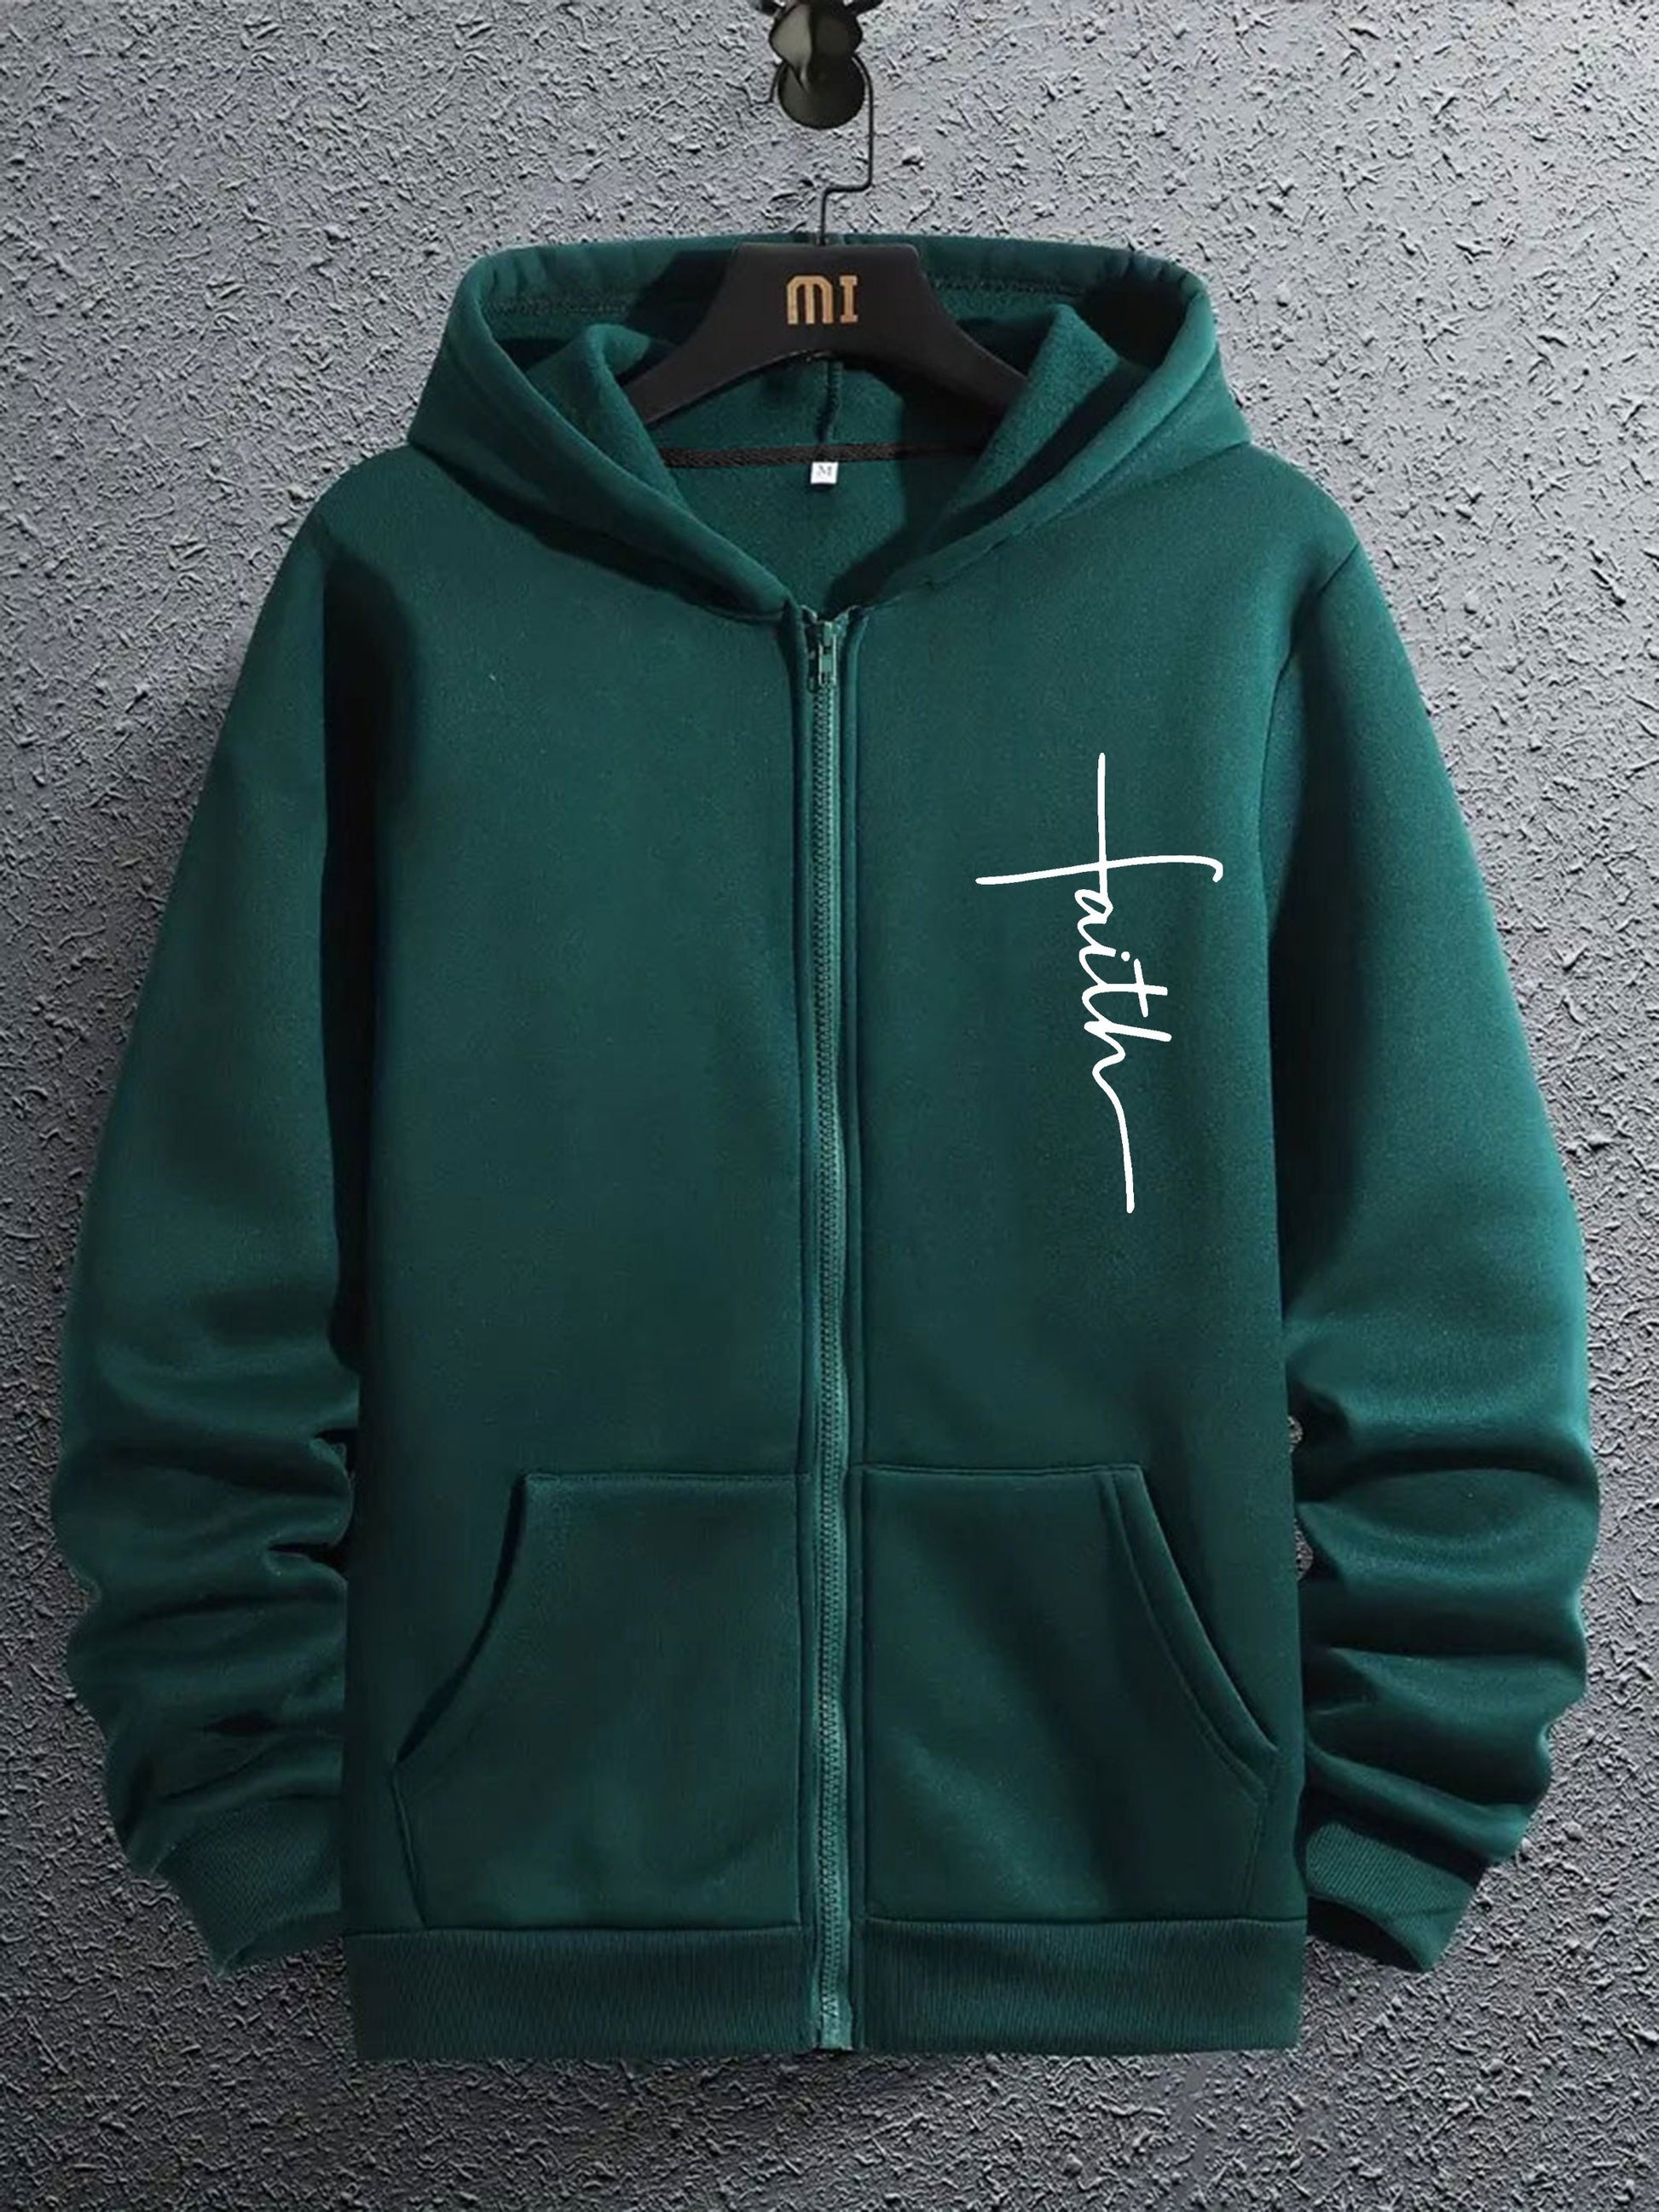 Faith Men's Christian Full Zip Hooded Sweatshirt claimedbygoddesigns